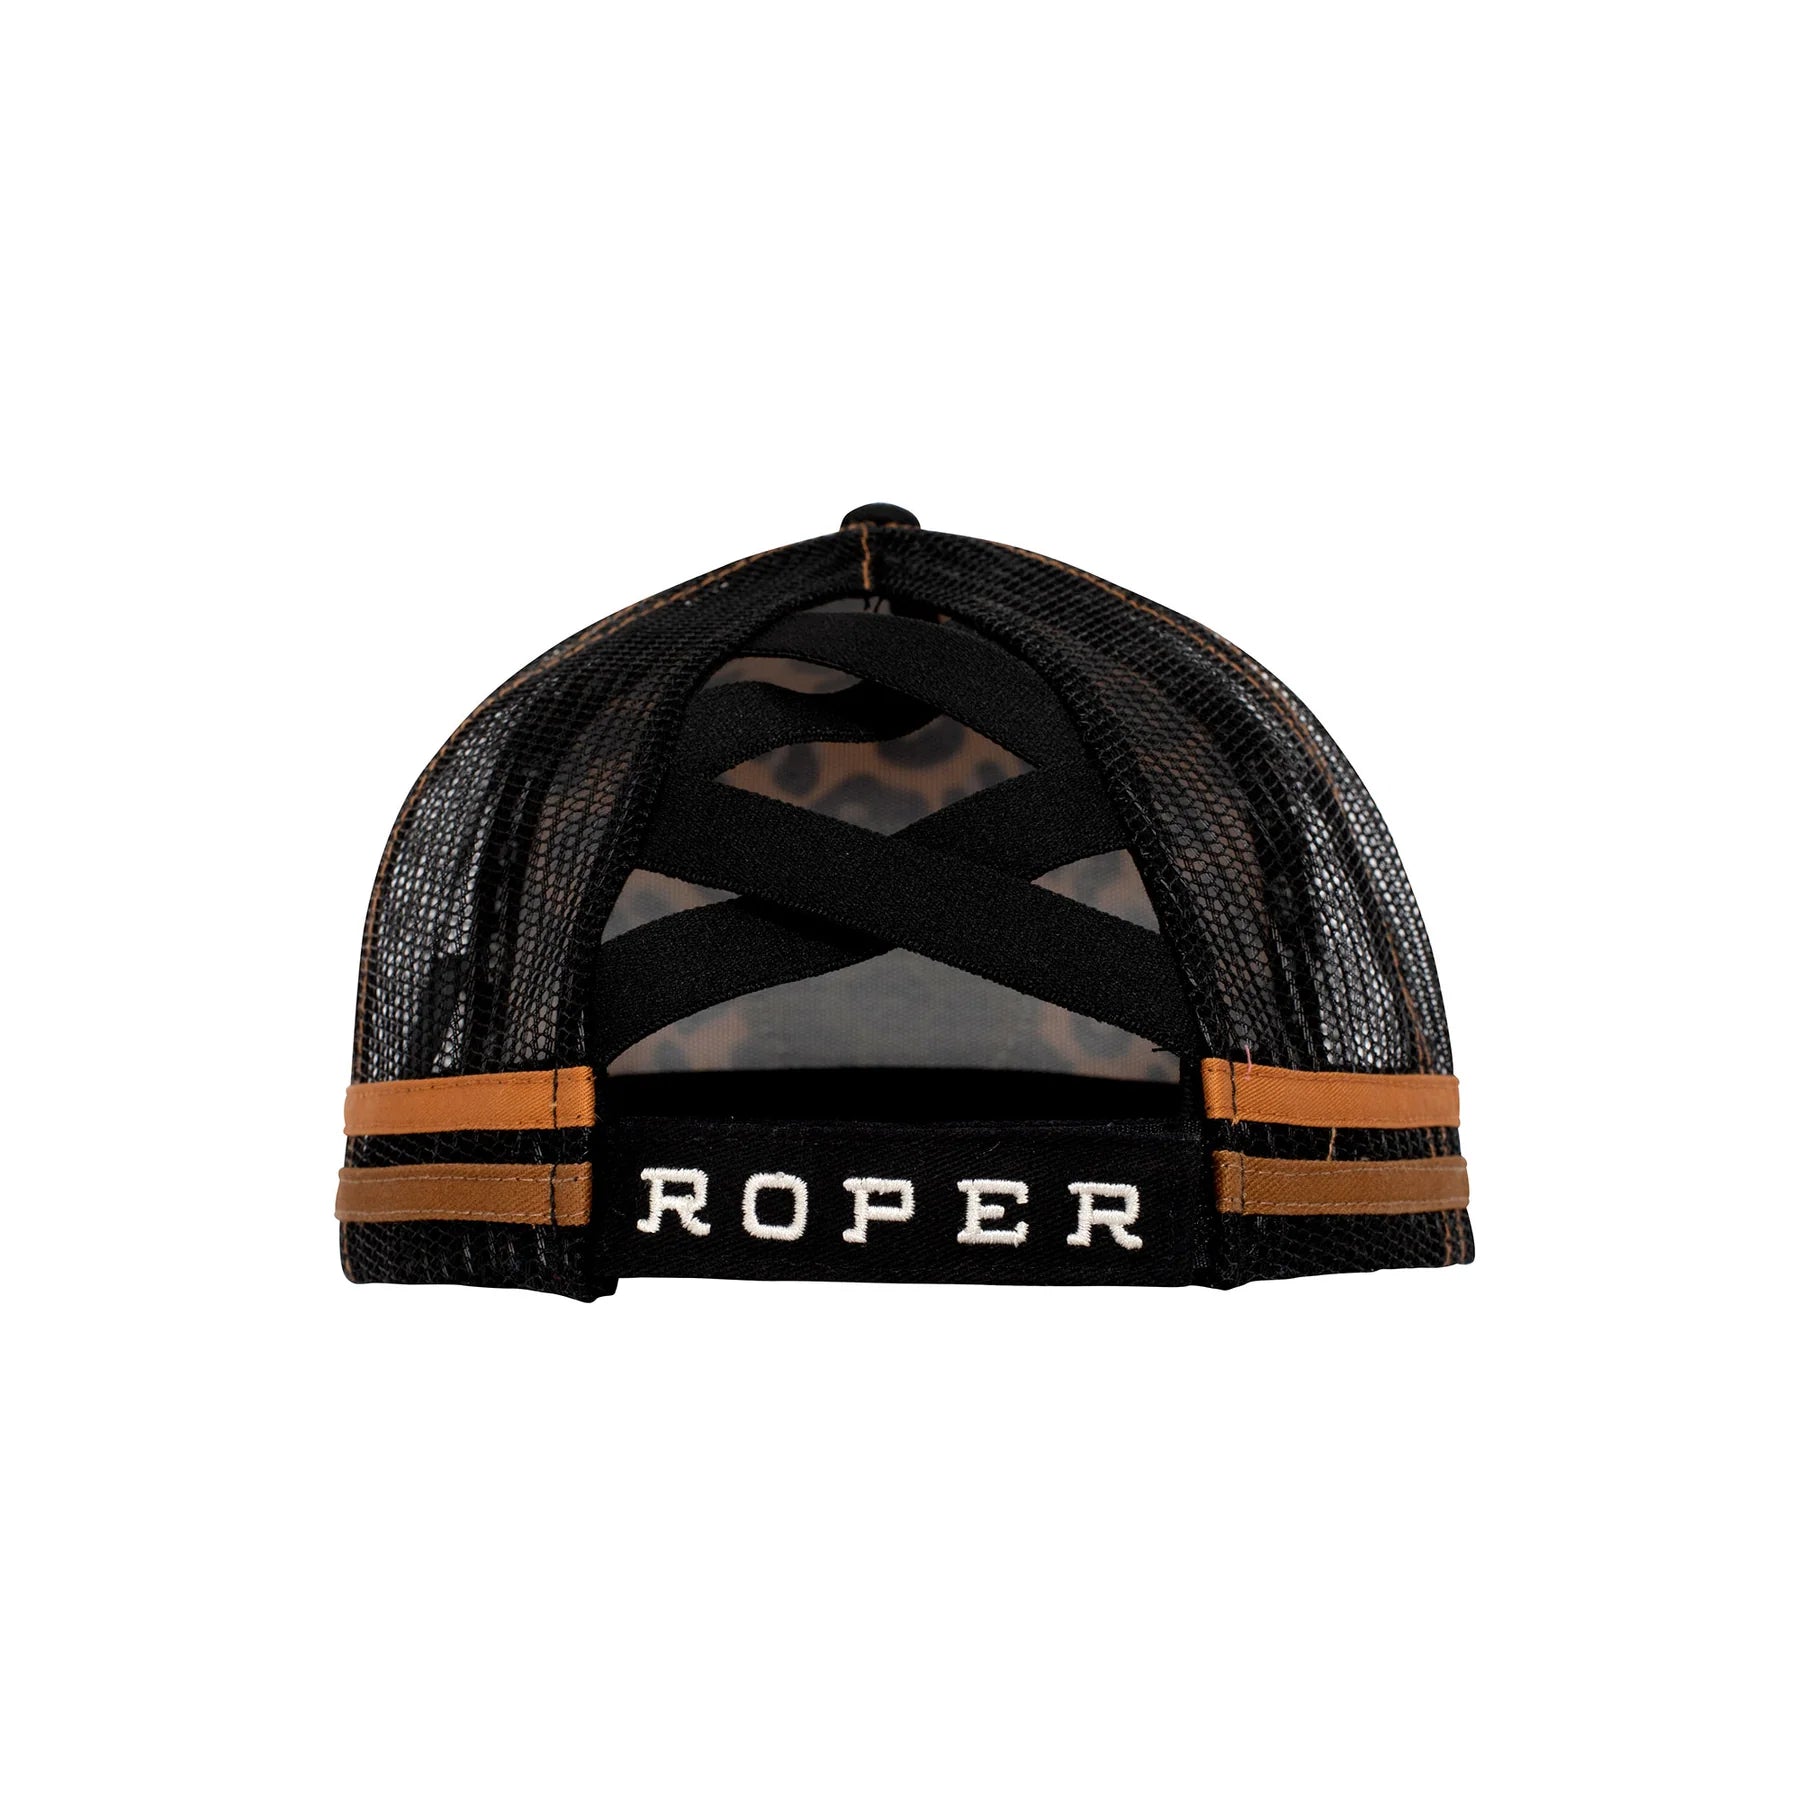 Roper Trucker Cap - Leopard Print Black/Tan